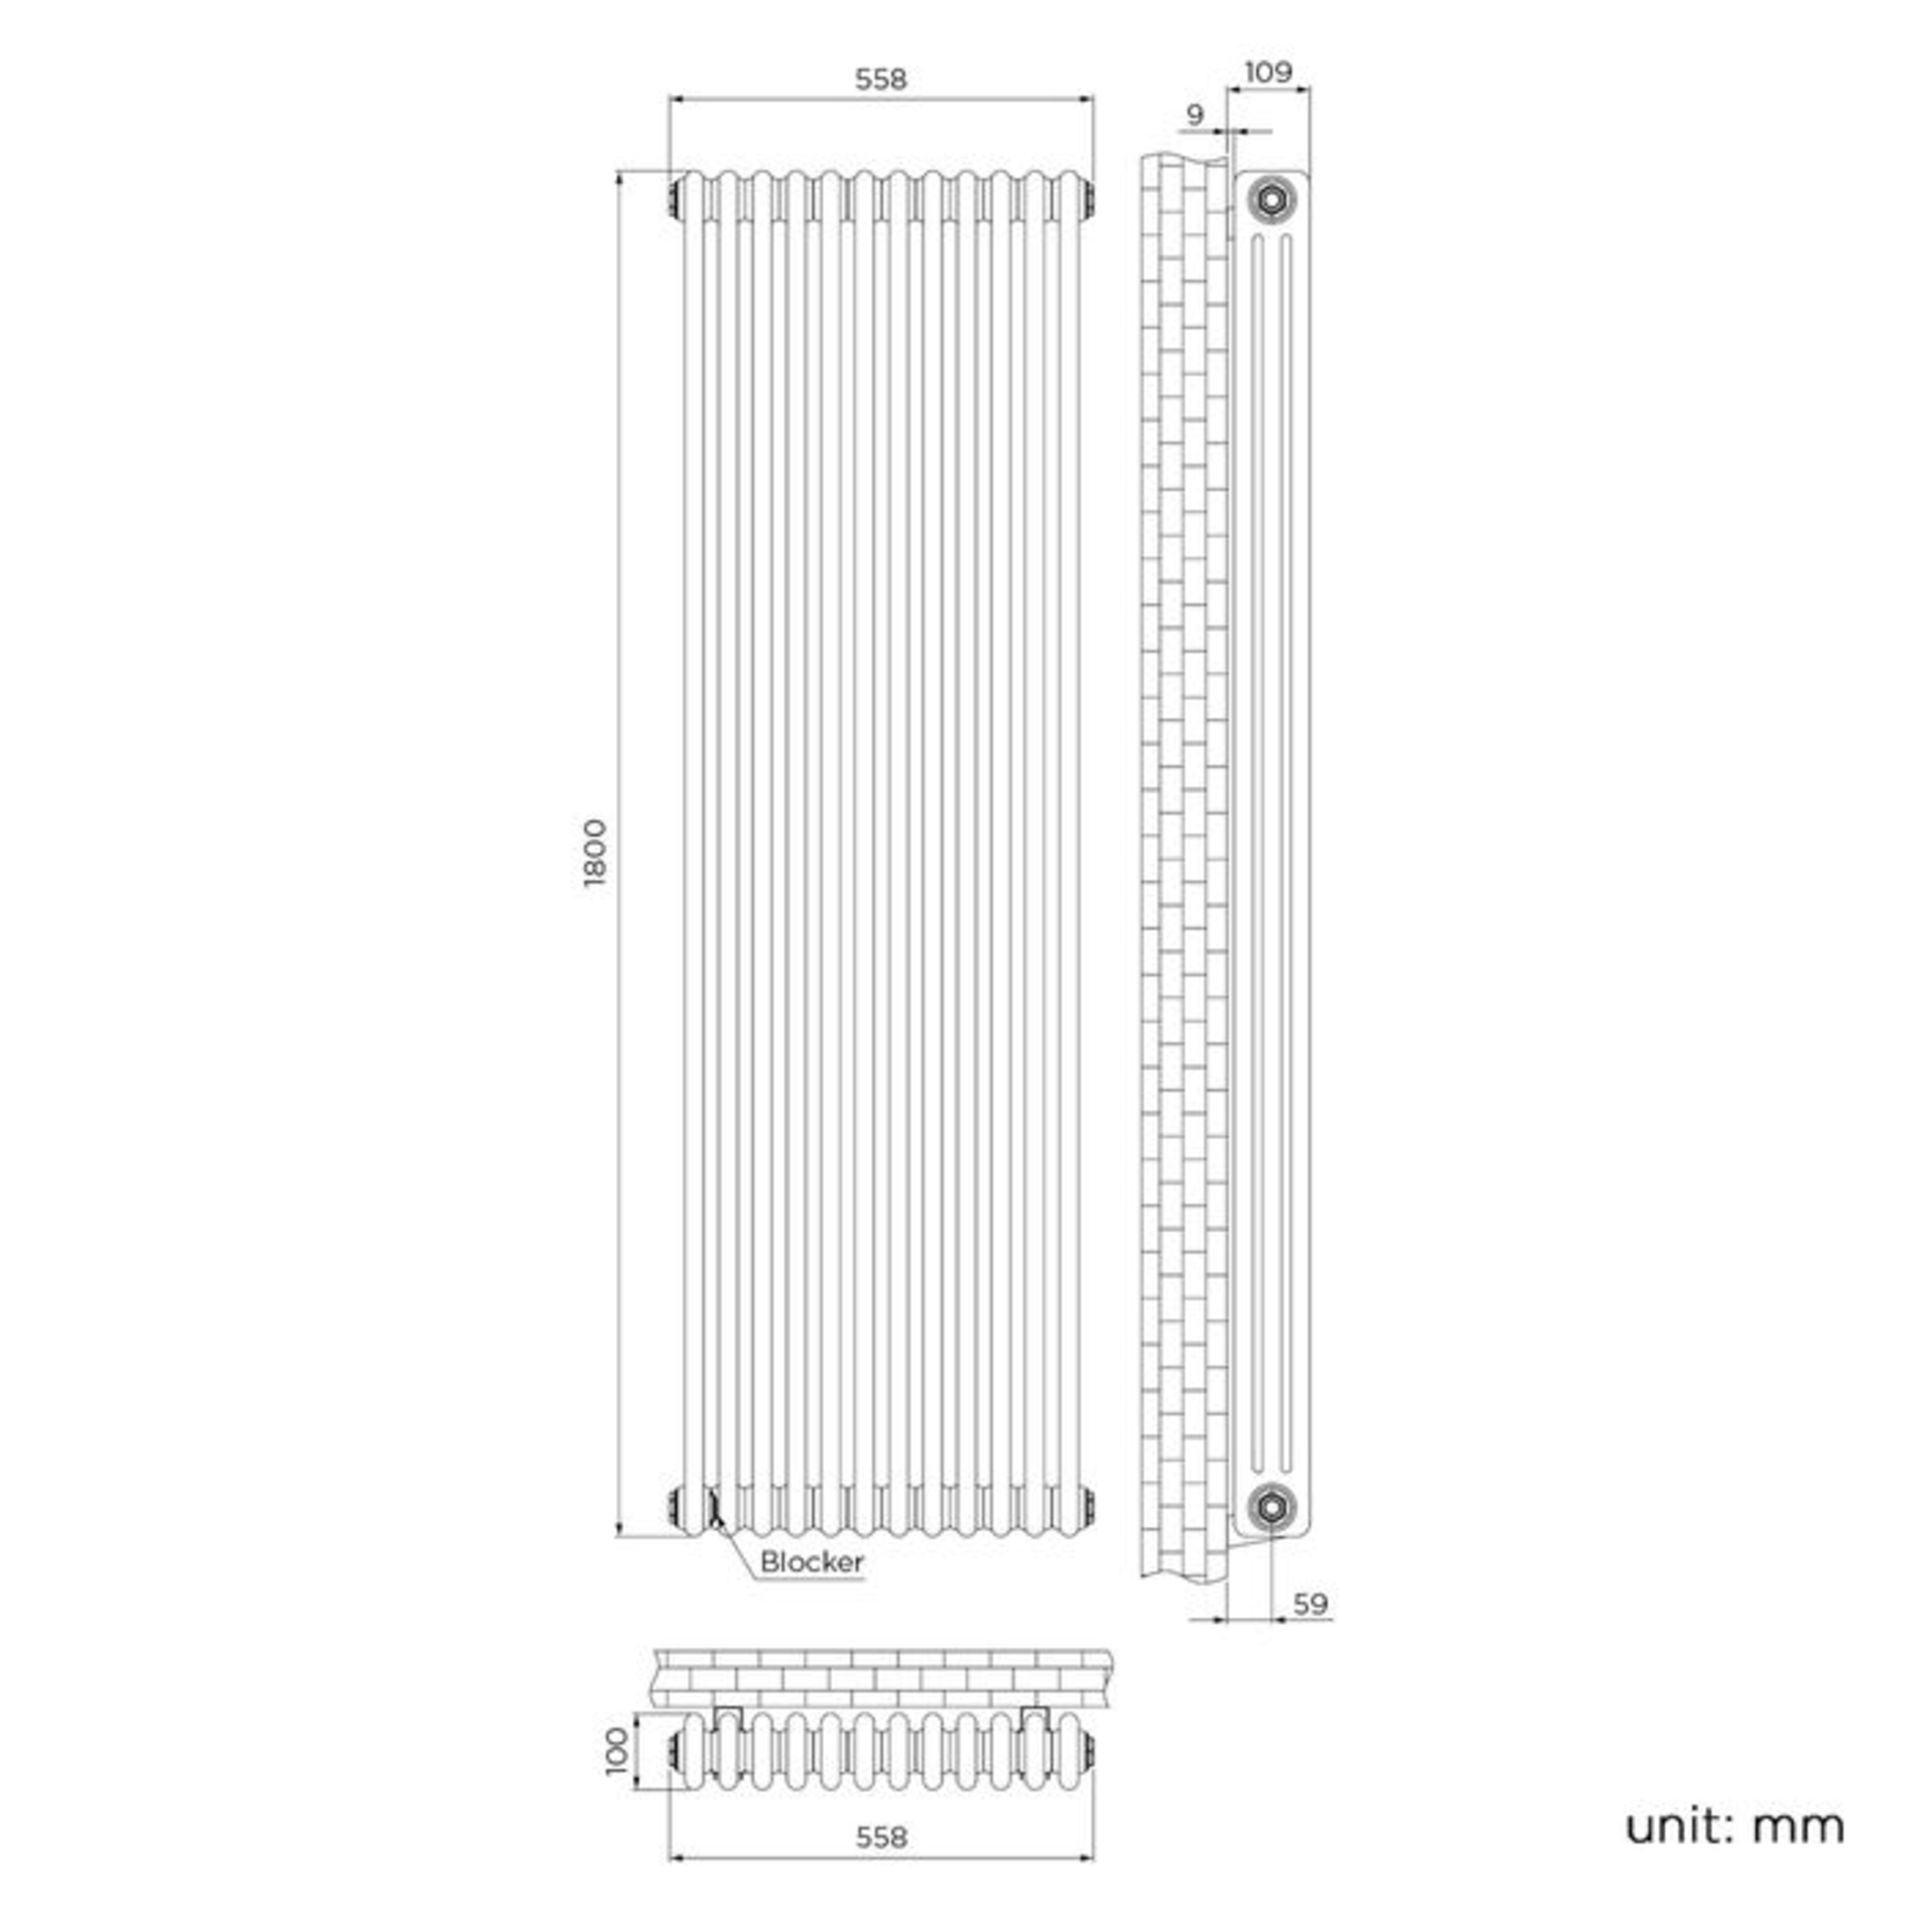 (SA206) 1800x554mm Earl Grey Triple Panel Vertical ColosseumTraditional Radiator. RRP £534.99. - Image 3 of 3